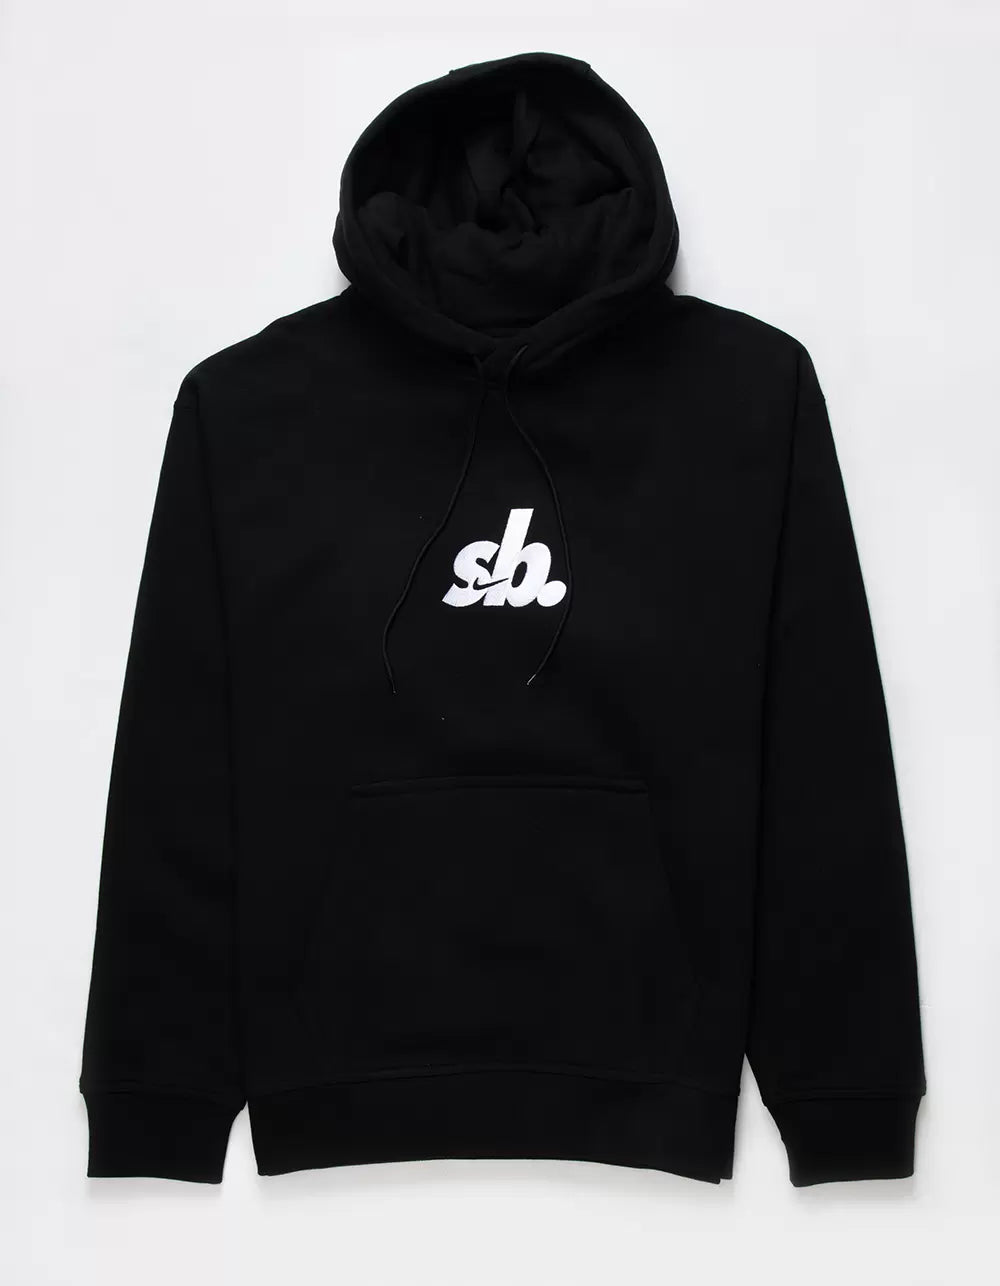 Nike Sb - Sb Logo Hoodie (Black)